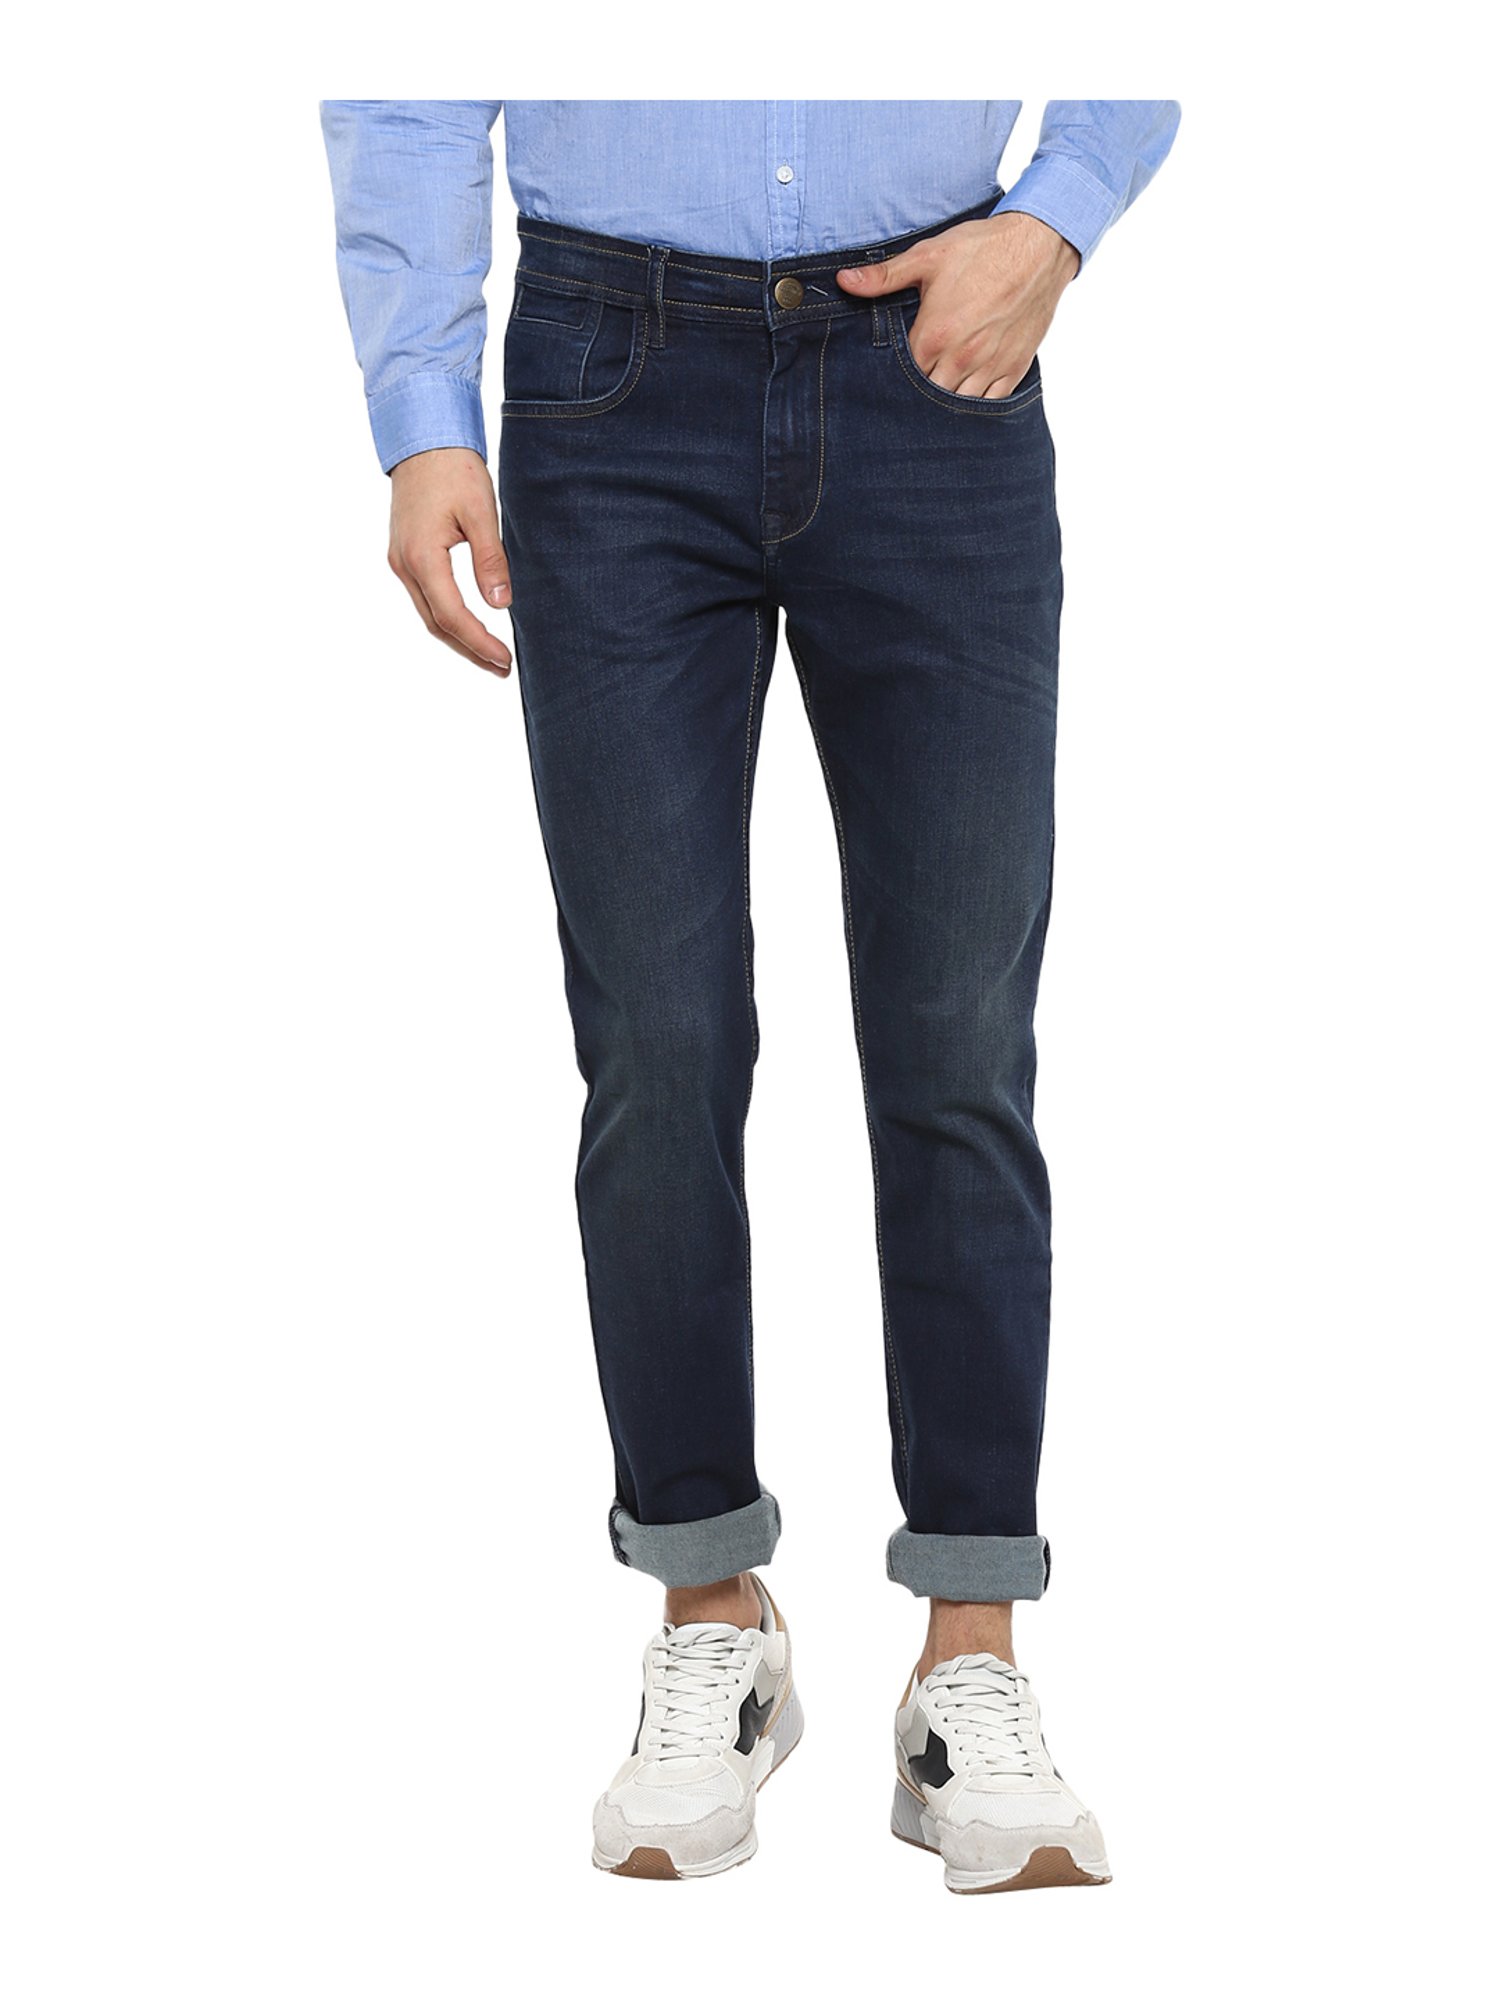 Buy Men Navy Skinny Fit Dark Wash Jeans Online - 741573 | Allen Solly